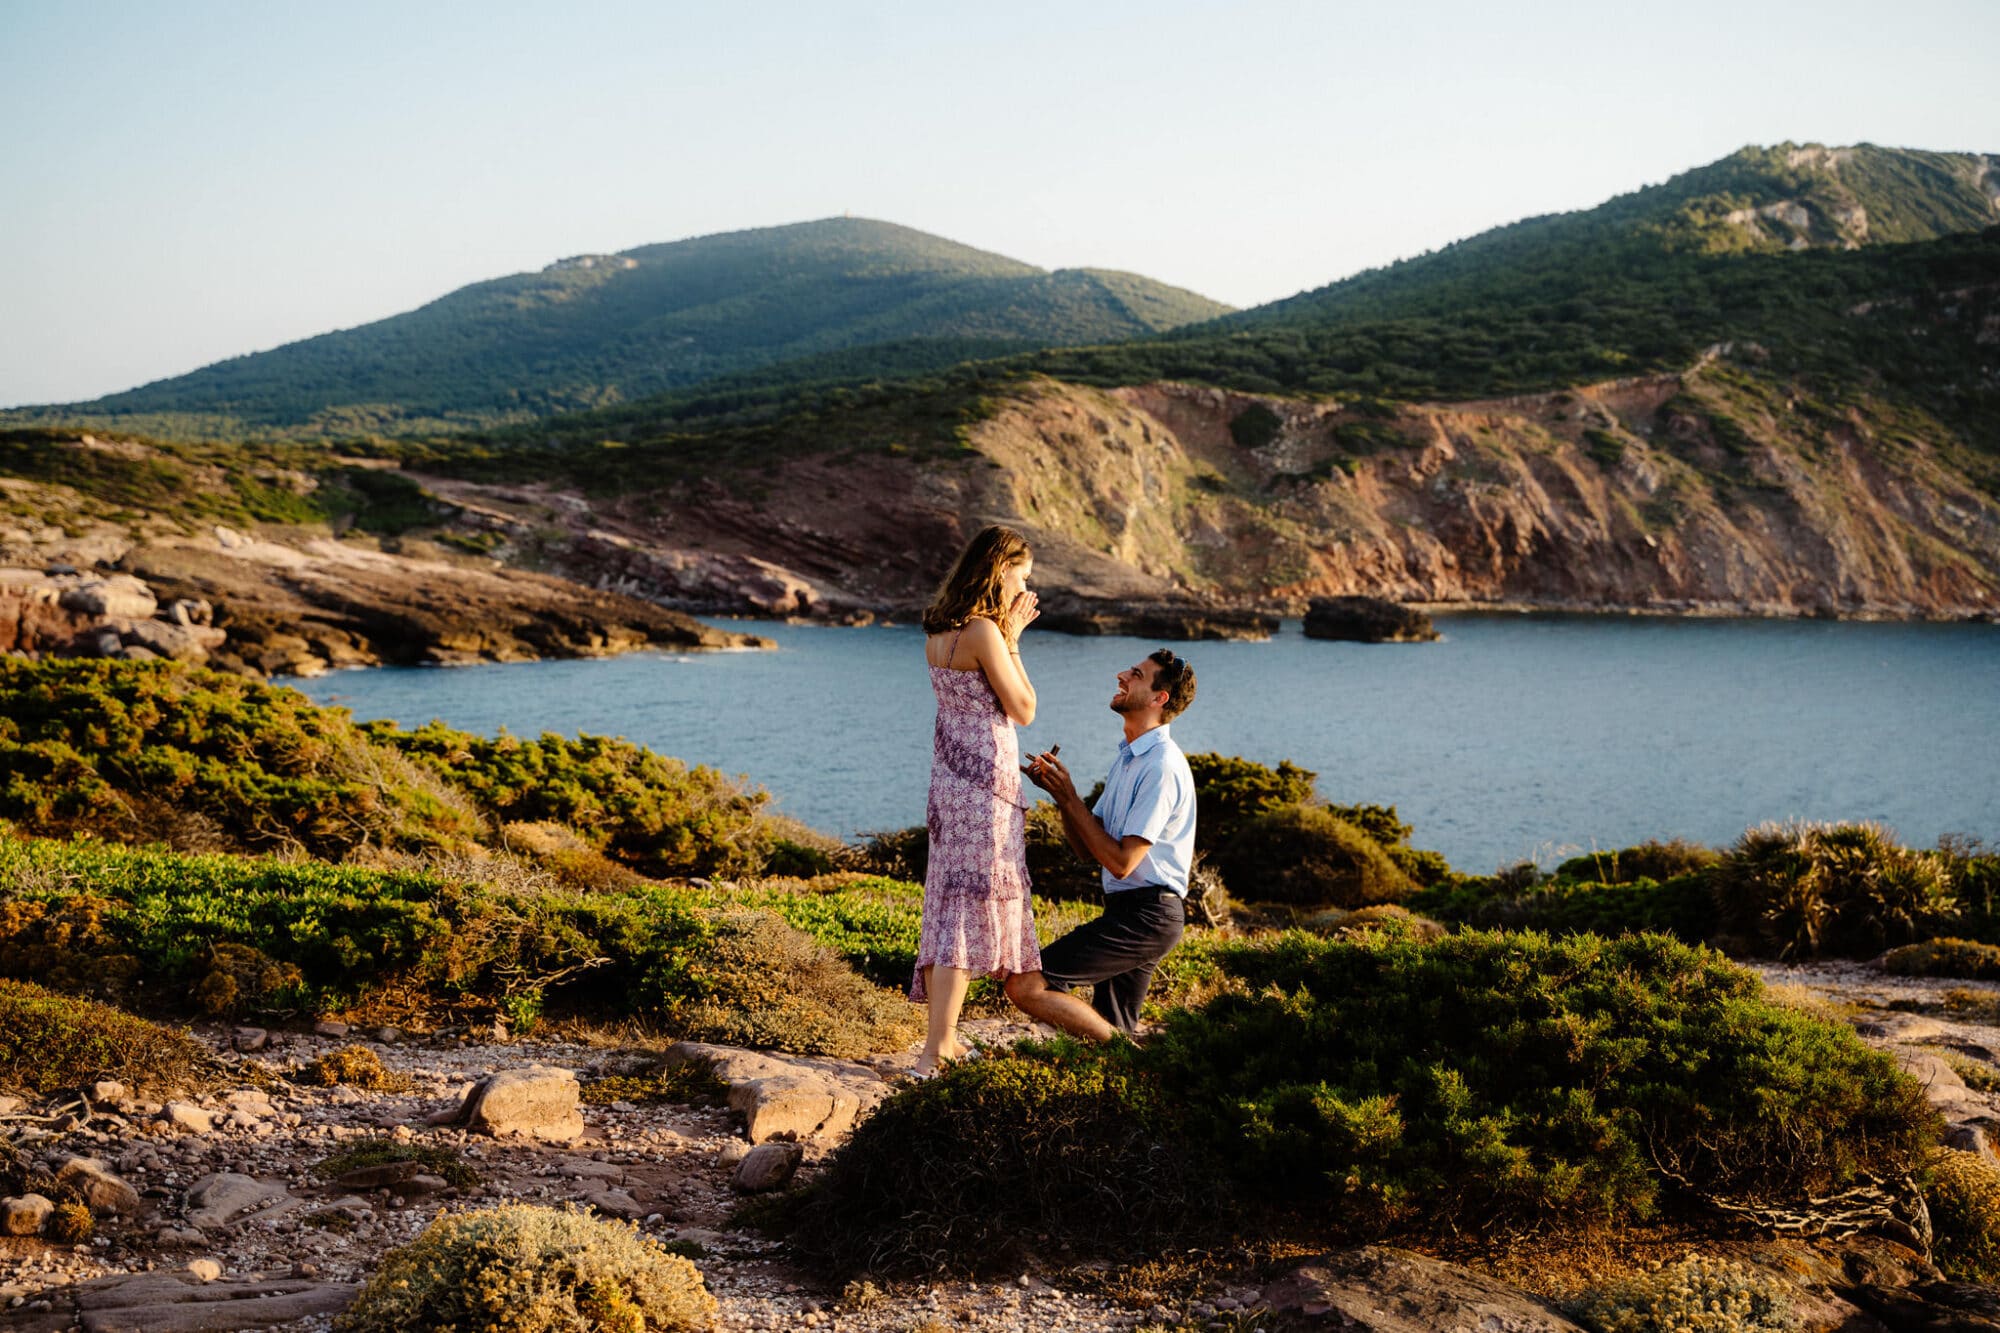 Why Choose Alghero, Sardinia For A Wedding Proposal?